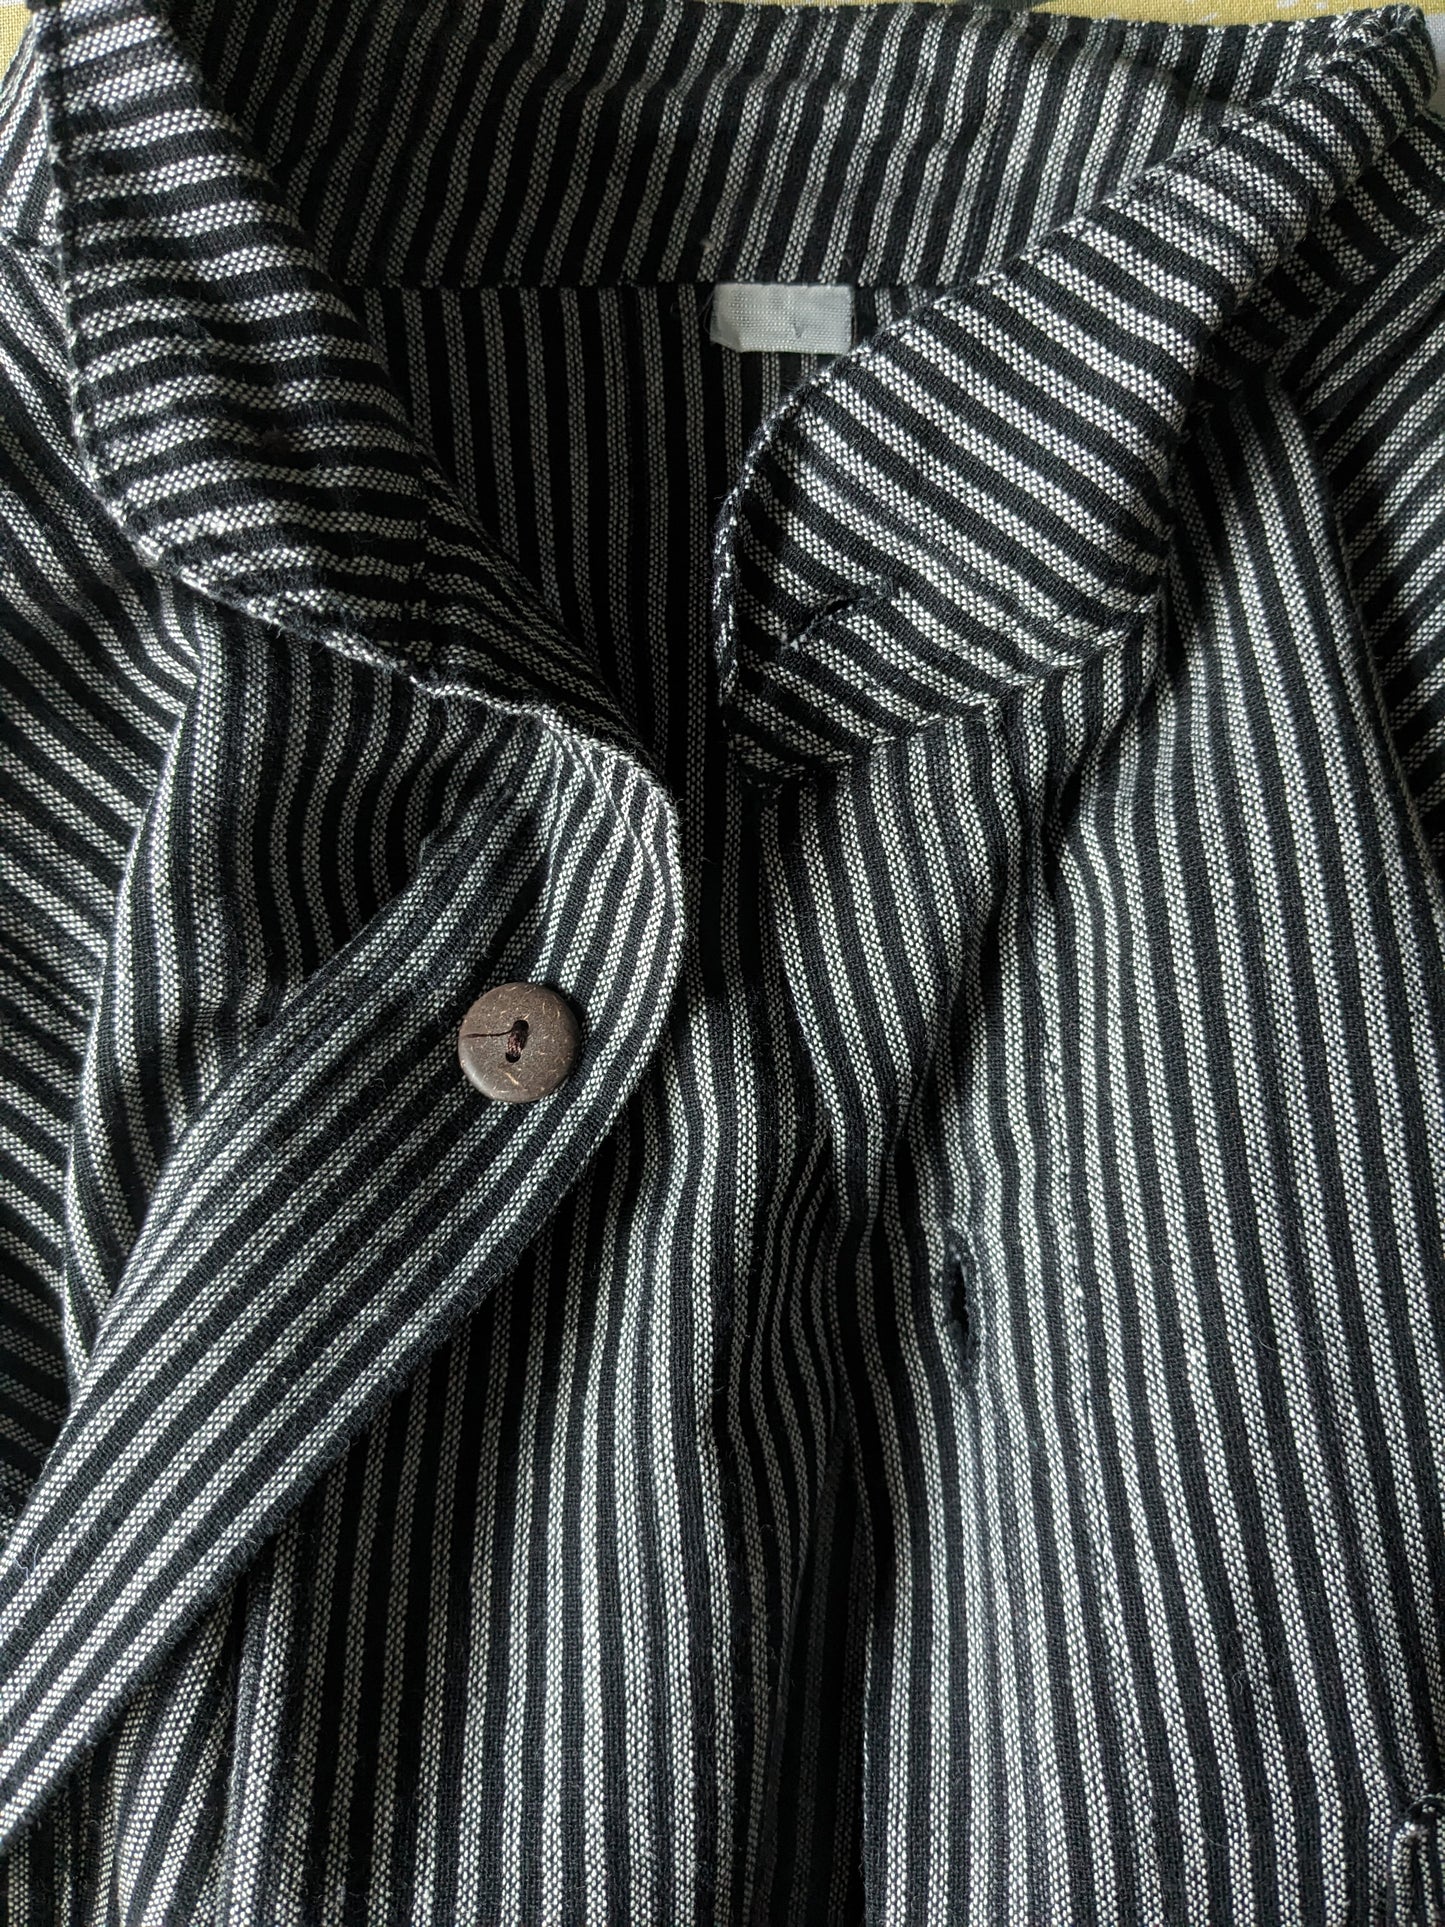 Vintage -Hemd aufrecht / Bauern / Mao -Kragen. Schwarz grau gestreift. Größe M.